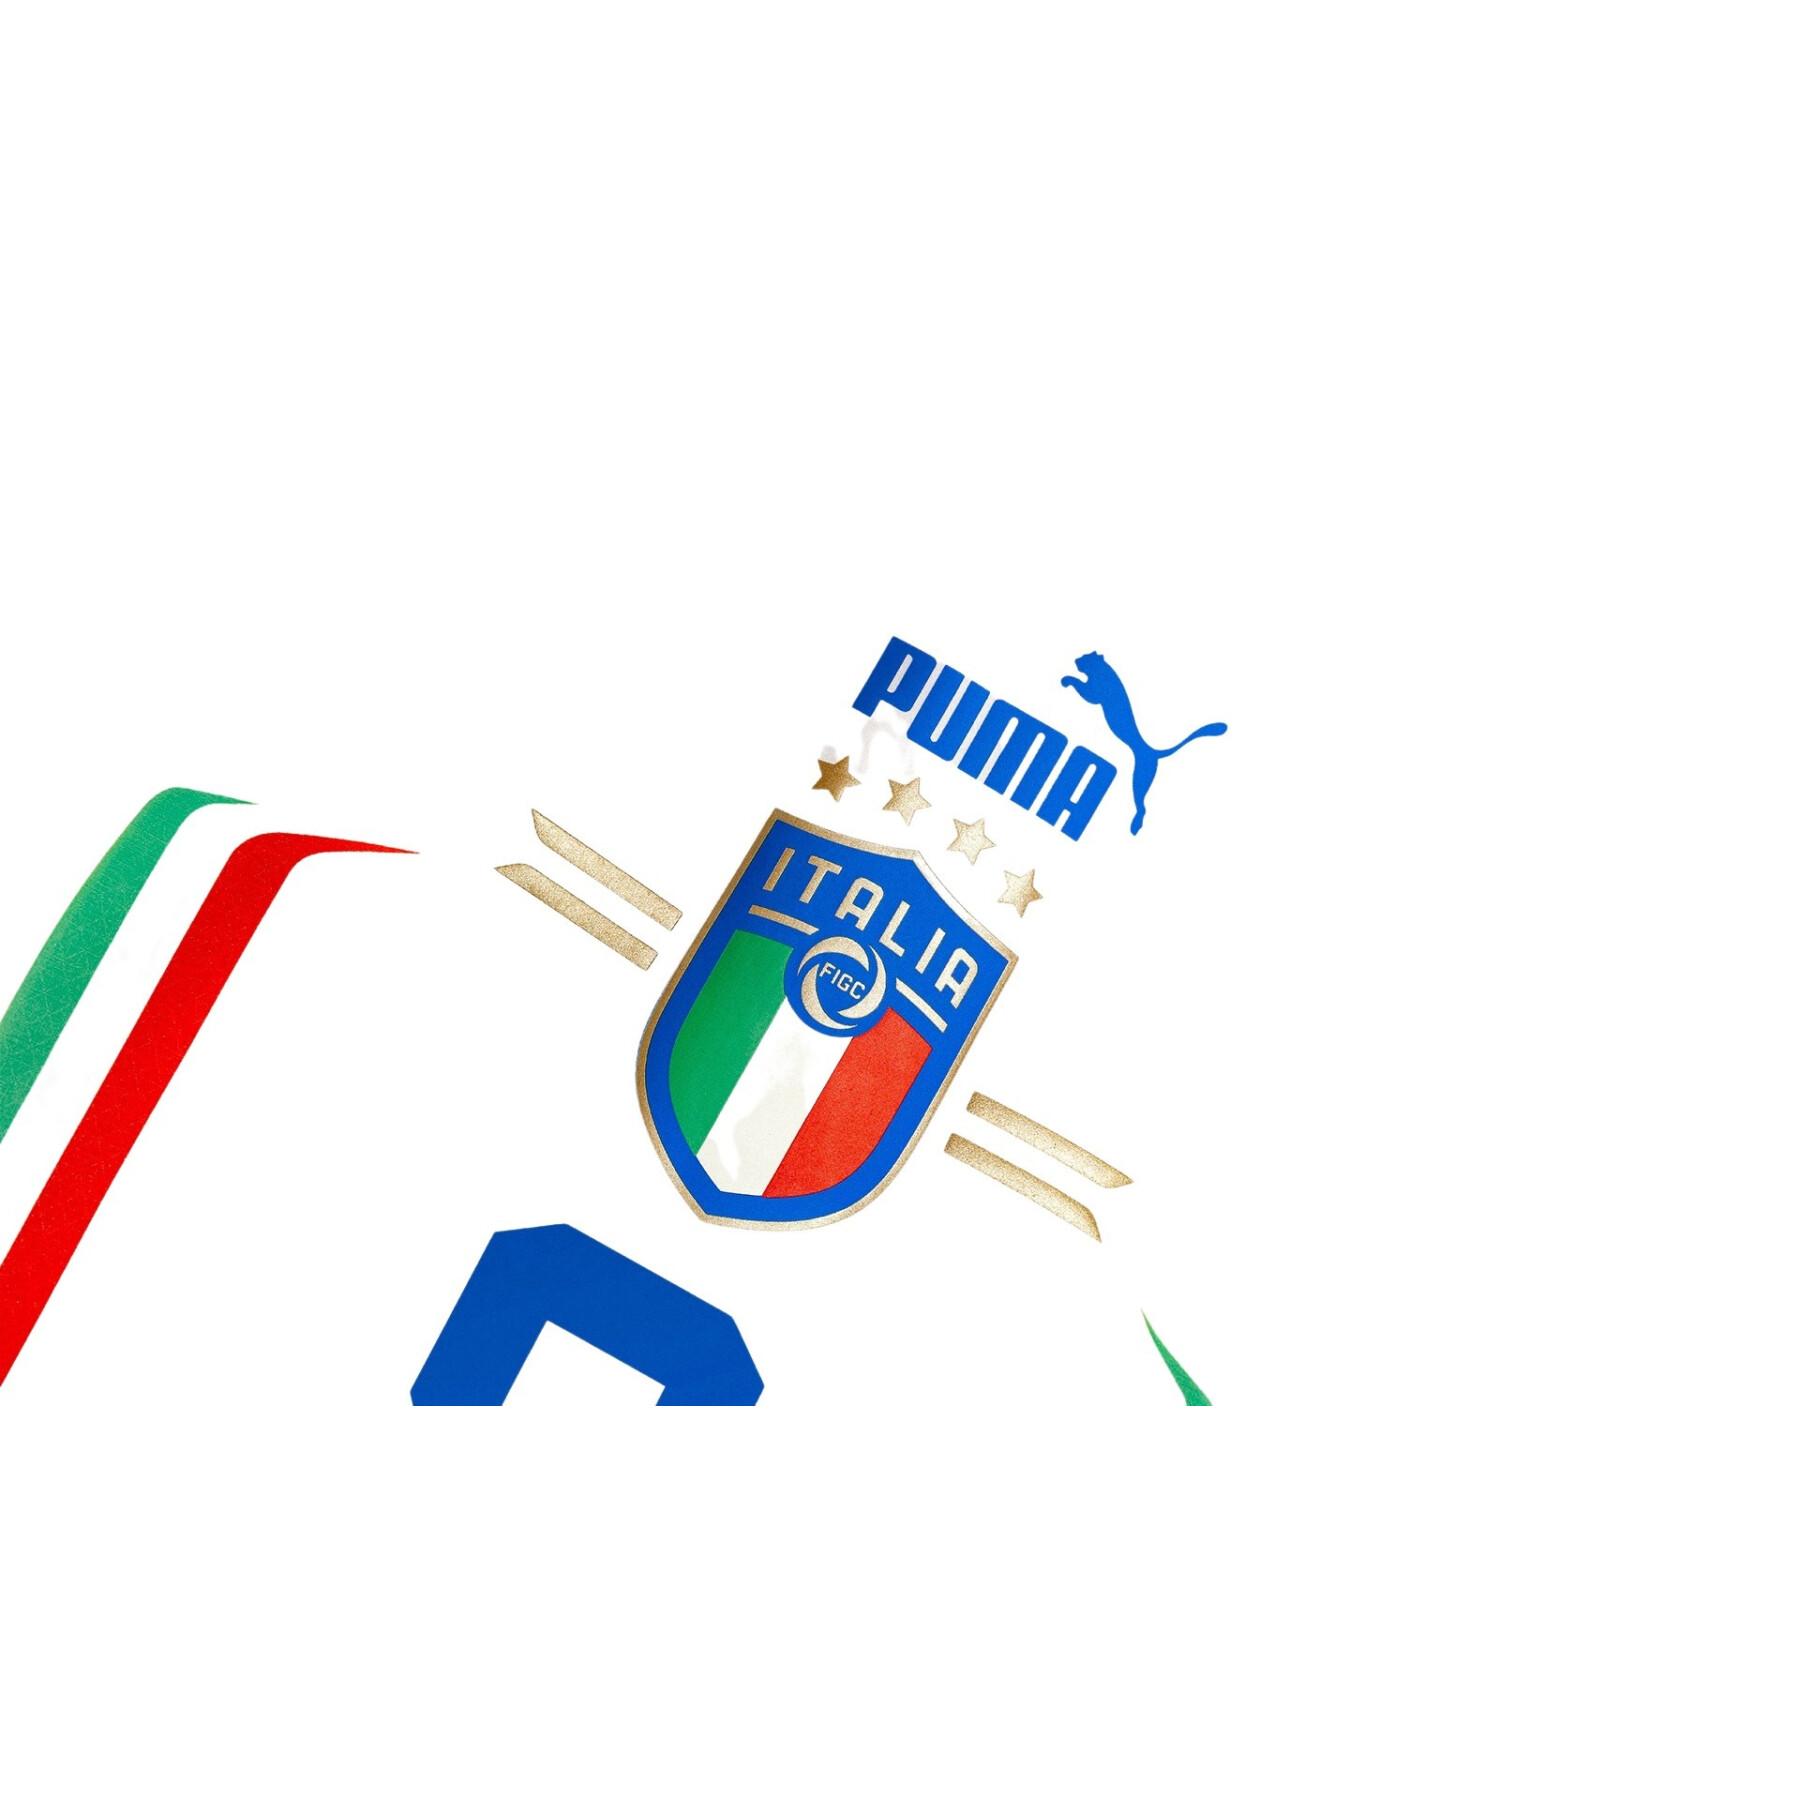 Camiseta segunda equipación Italie 2022/23